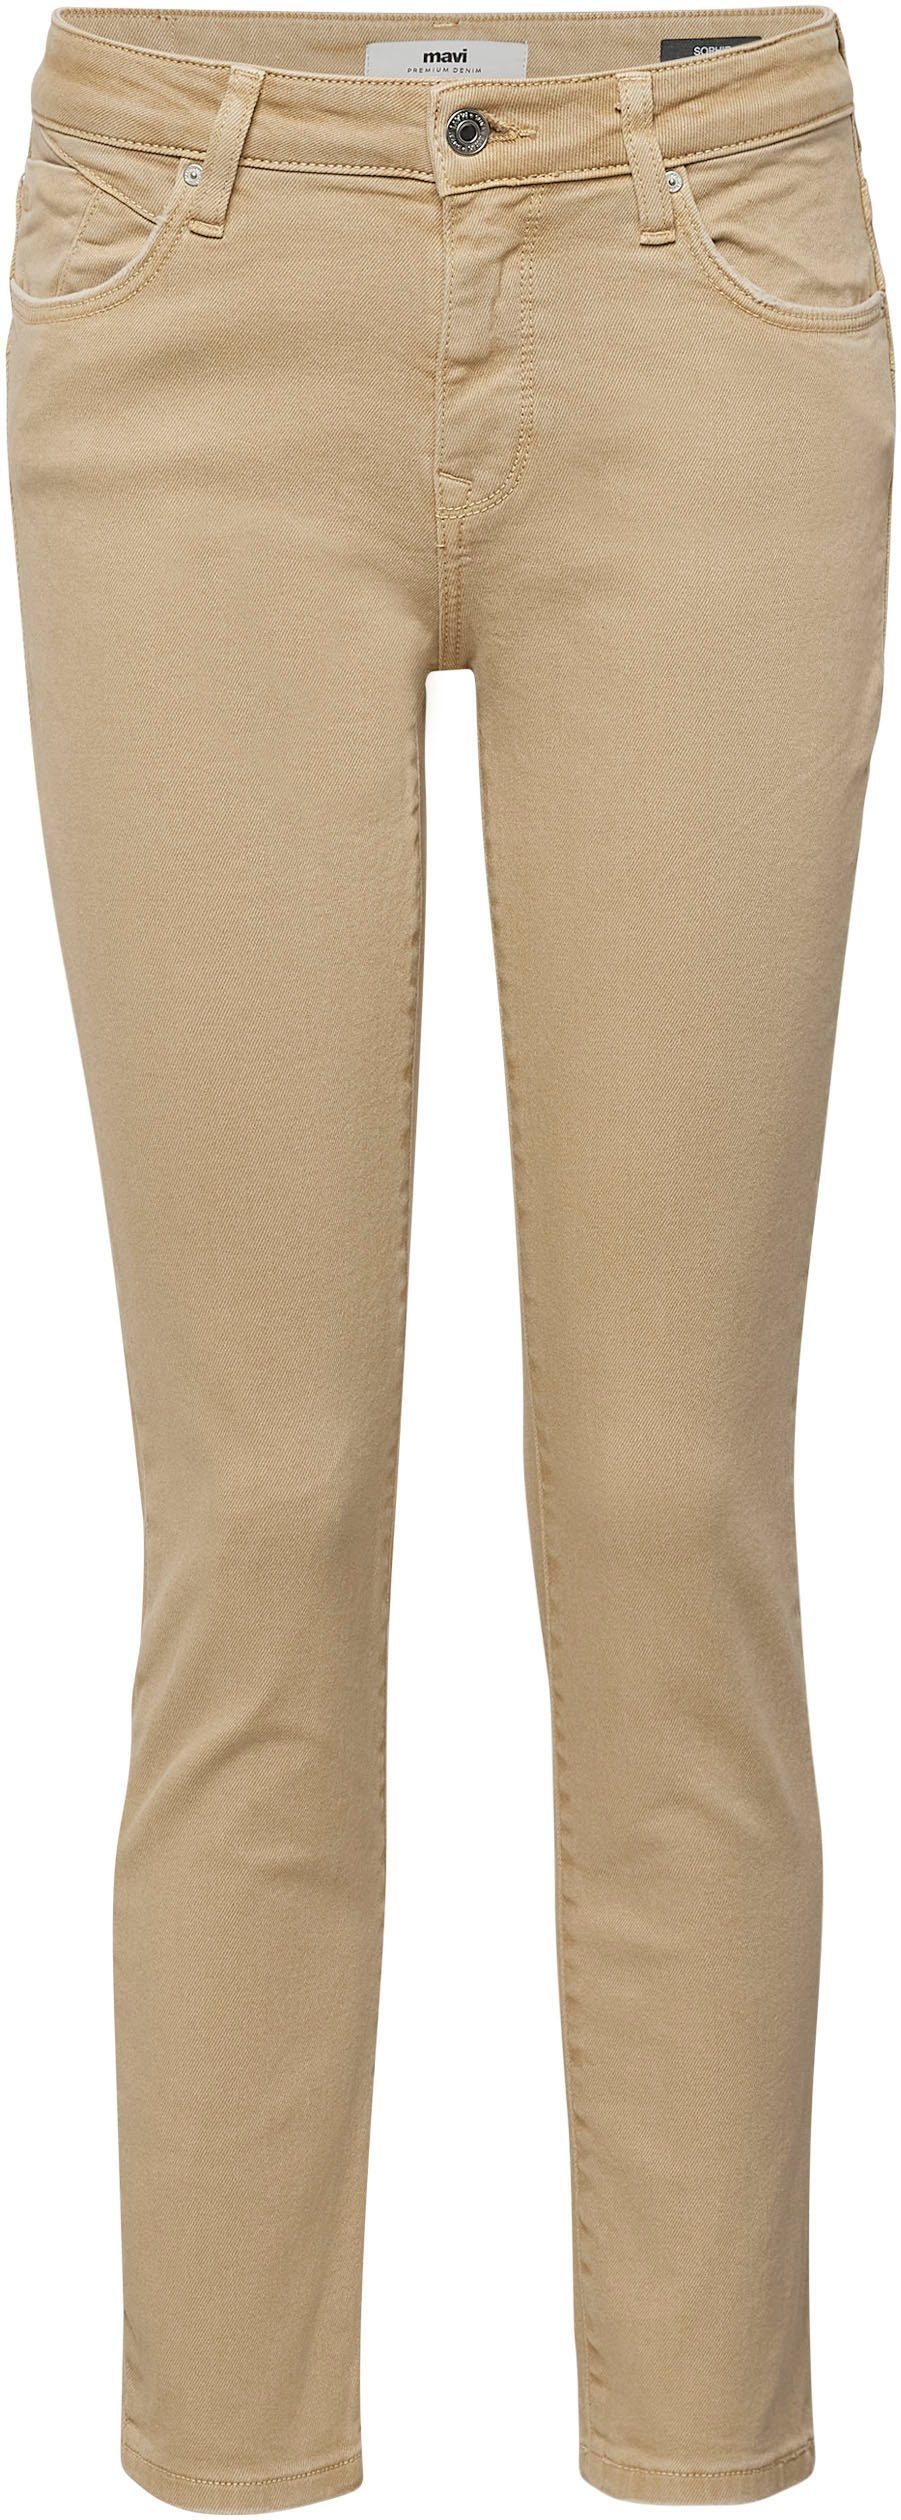 Mavi Slim-fit-Jeans trageangenehmer camel Stretchdenim Verarbeitung dank (beige) hochwertiger